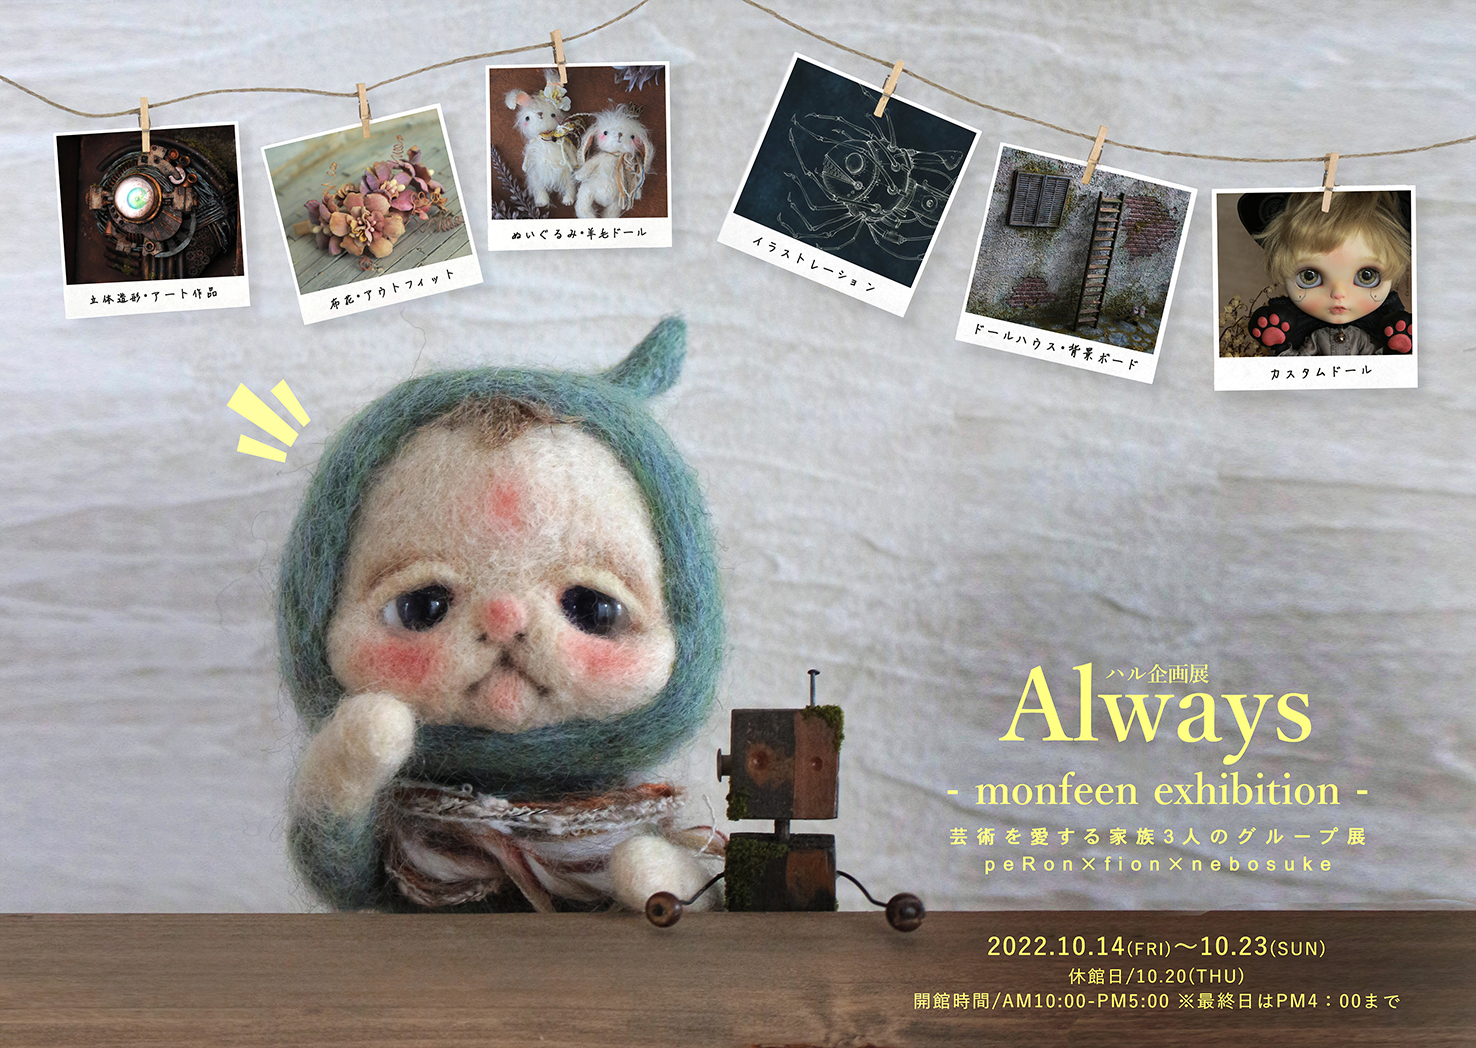 ハル企画展 Always   〜monfeen exhibition（モンフェーン・エキシビション）〜